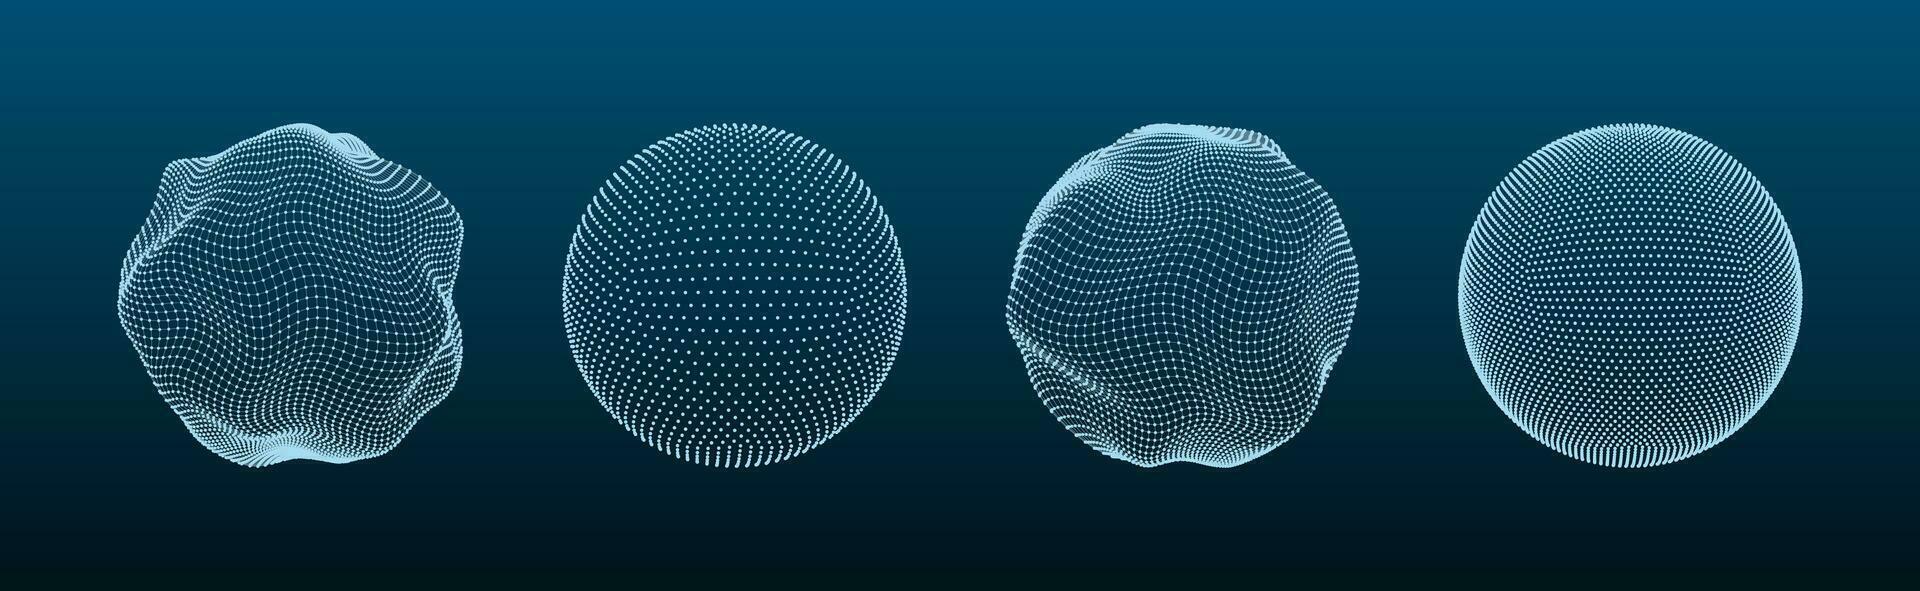 3d esfera malla. globo formas con puntos y línea red, orbe cable estructura modelos matriz futurista concepto. digital poligonal pelotas con partículas vector conjunto